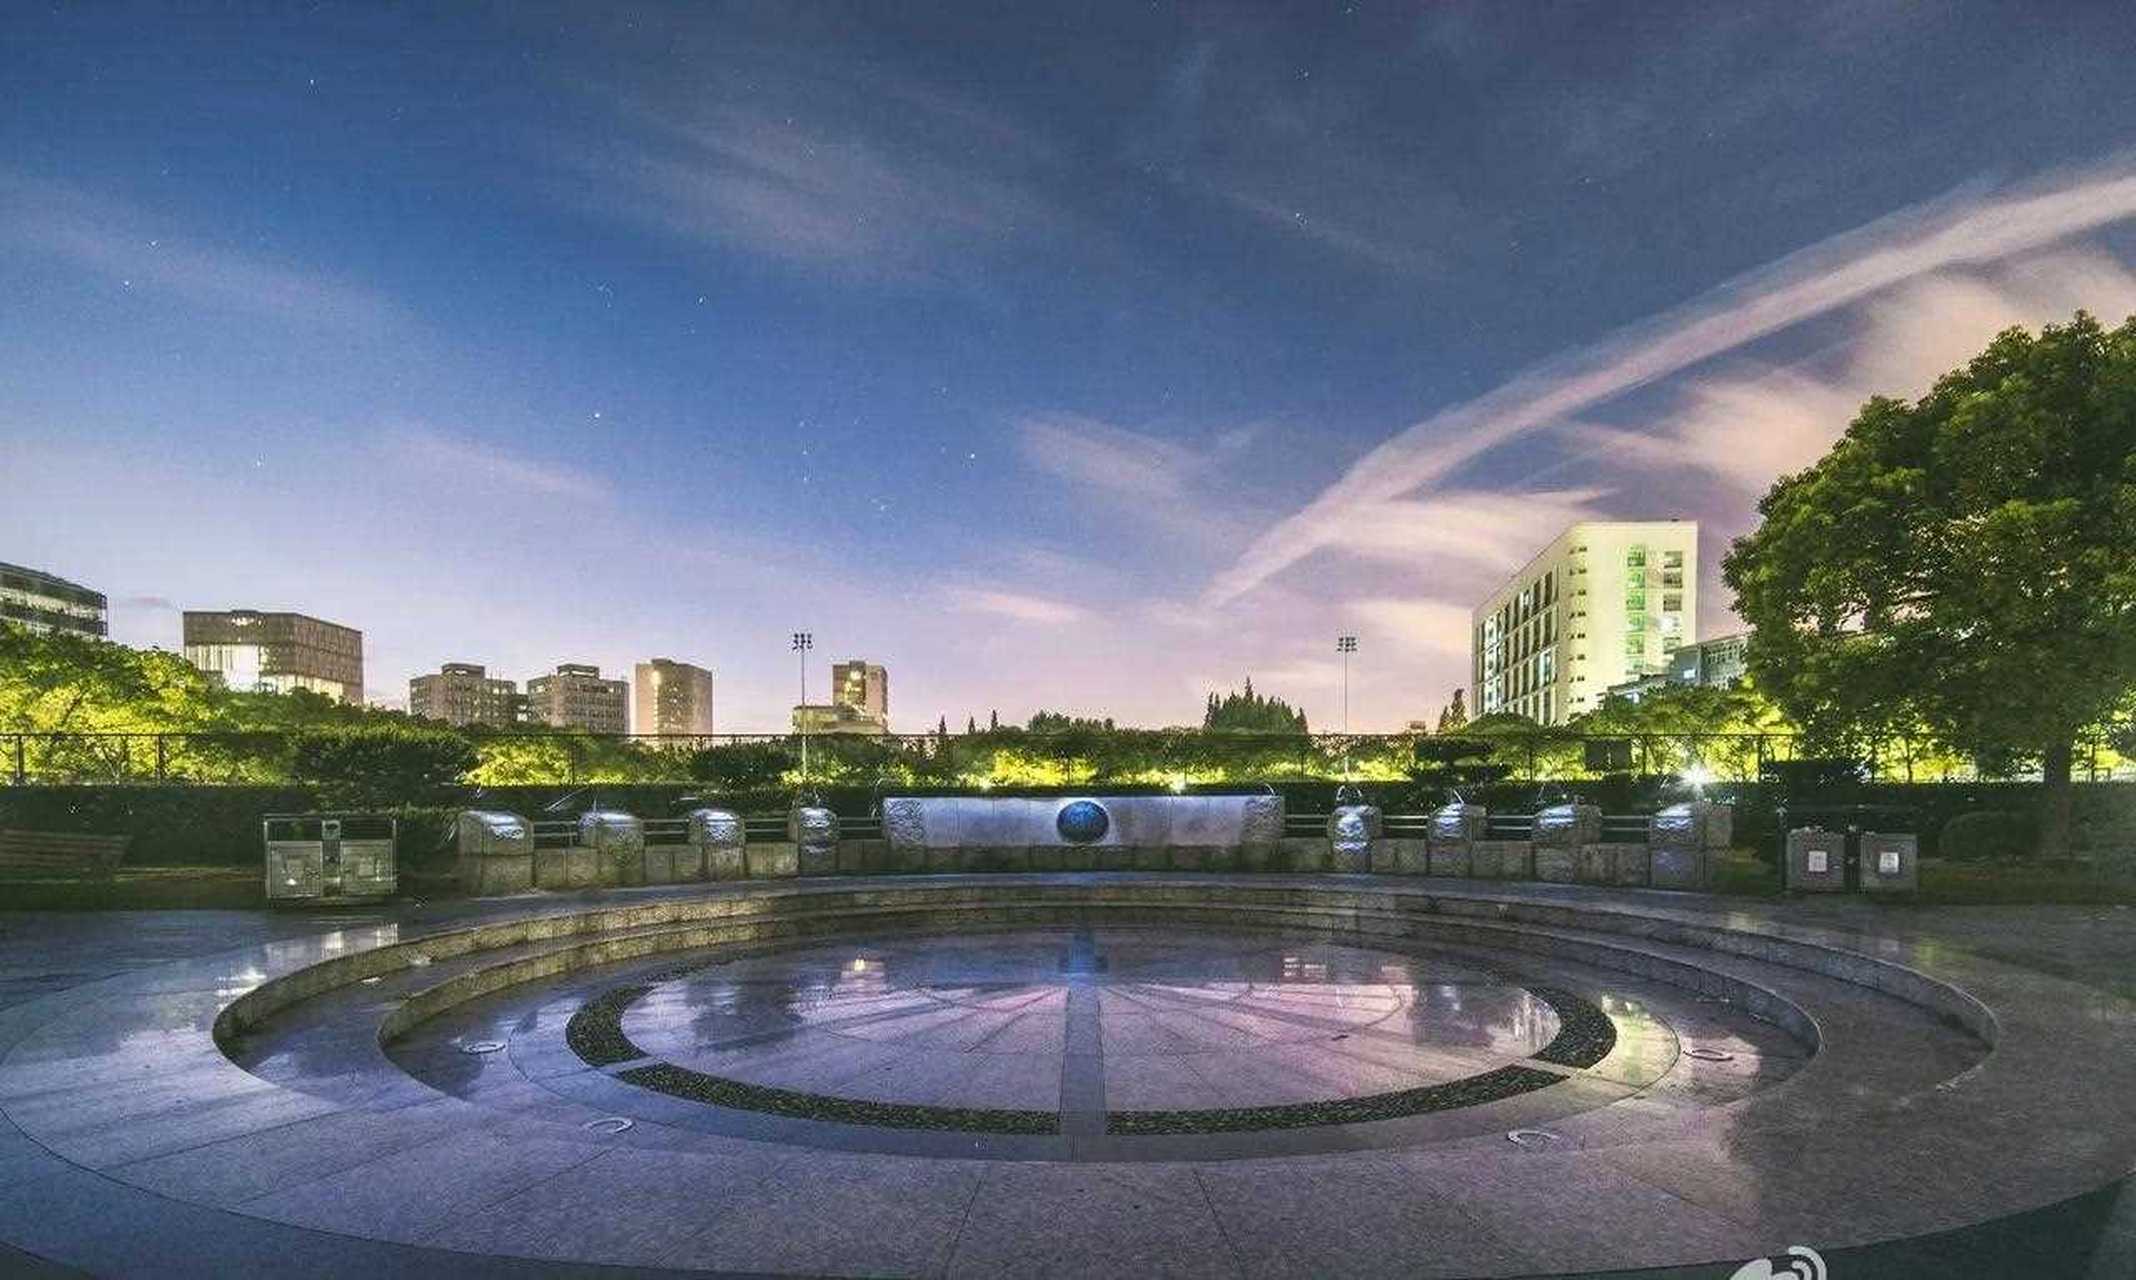 名称:同济大学四平路校区的夜景  地点:亚洲 